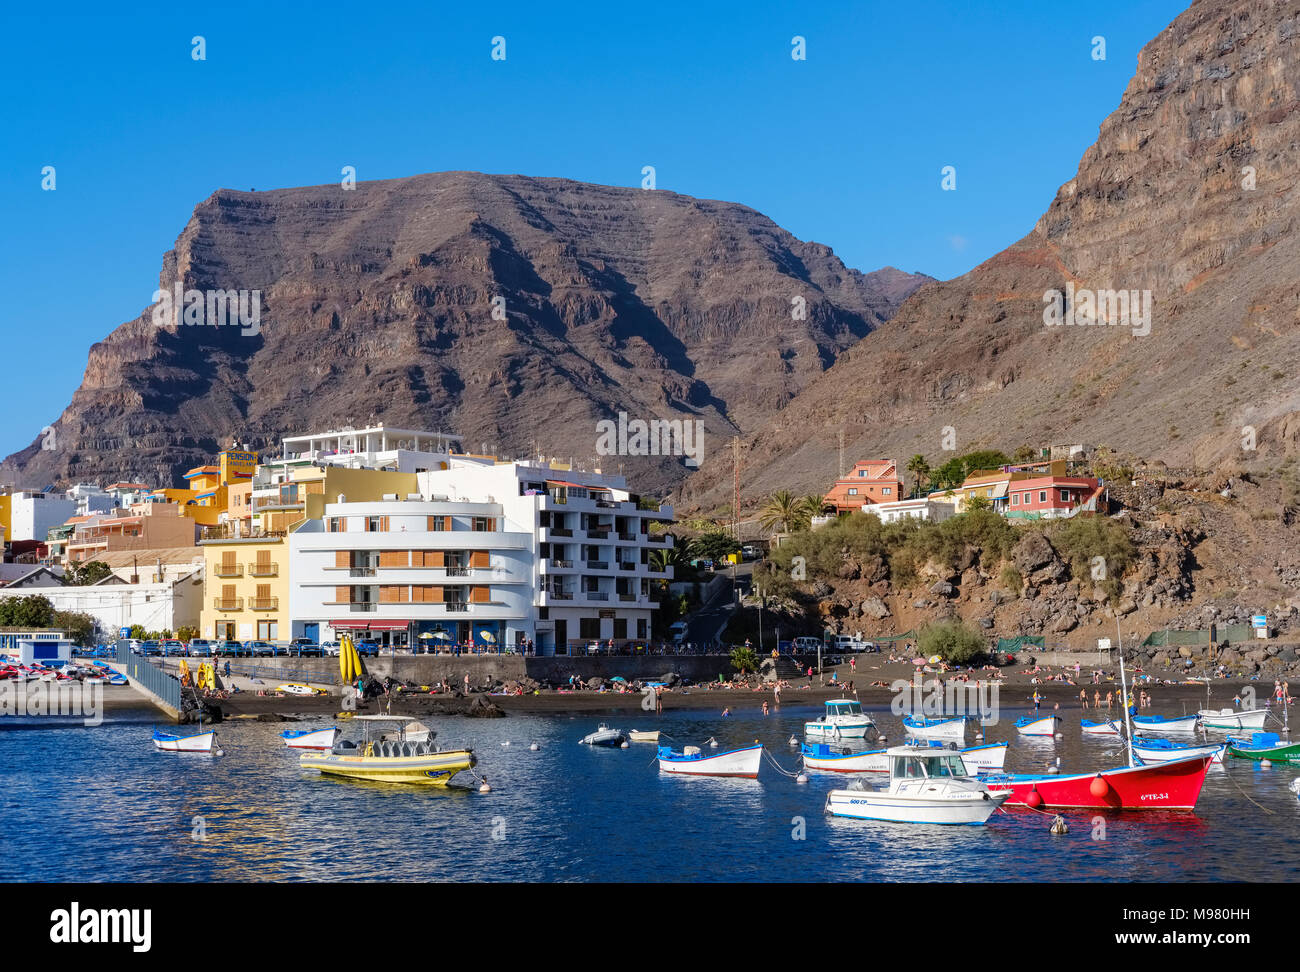 Fischerboote im Hafen, Vueltas, Valle Gran Rey, La Gomera, Kanarische Inseln, Spanien Banque D'Images